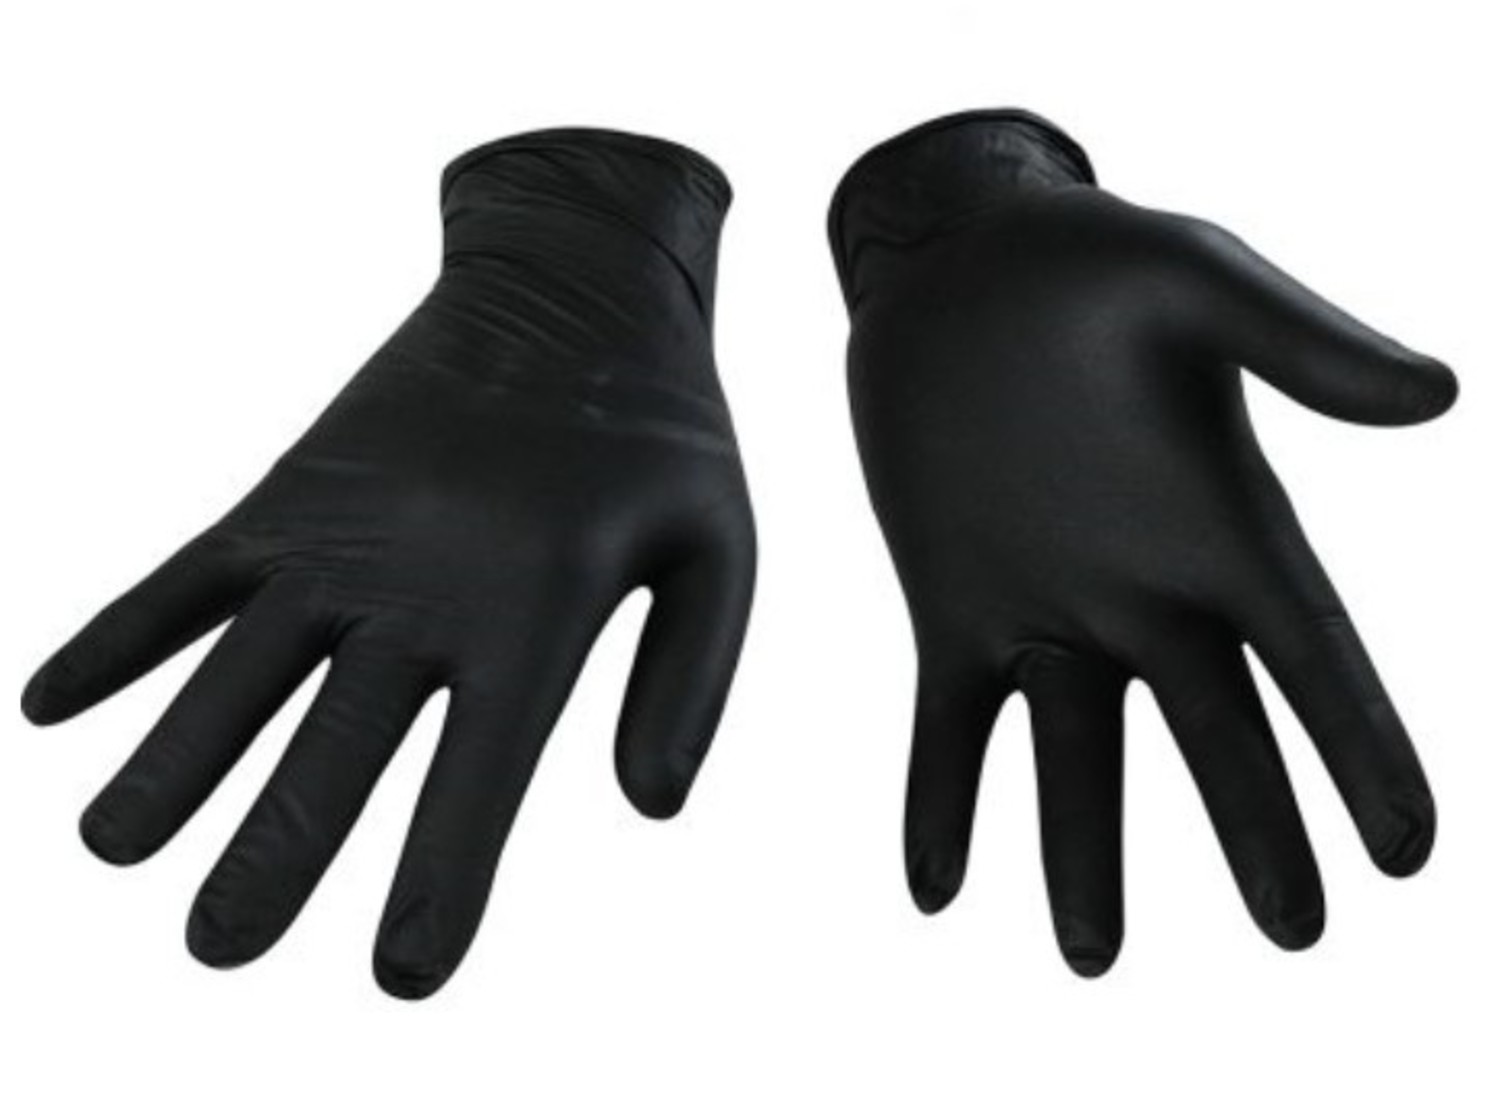 Gants Nitrile Glove Force - Carton 10 Boites de 100 unites Noir - ARAGANT -  équipement de protection individuelle (EPI) au Maroc